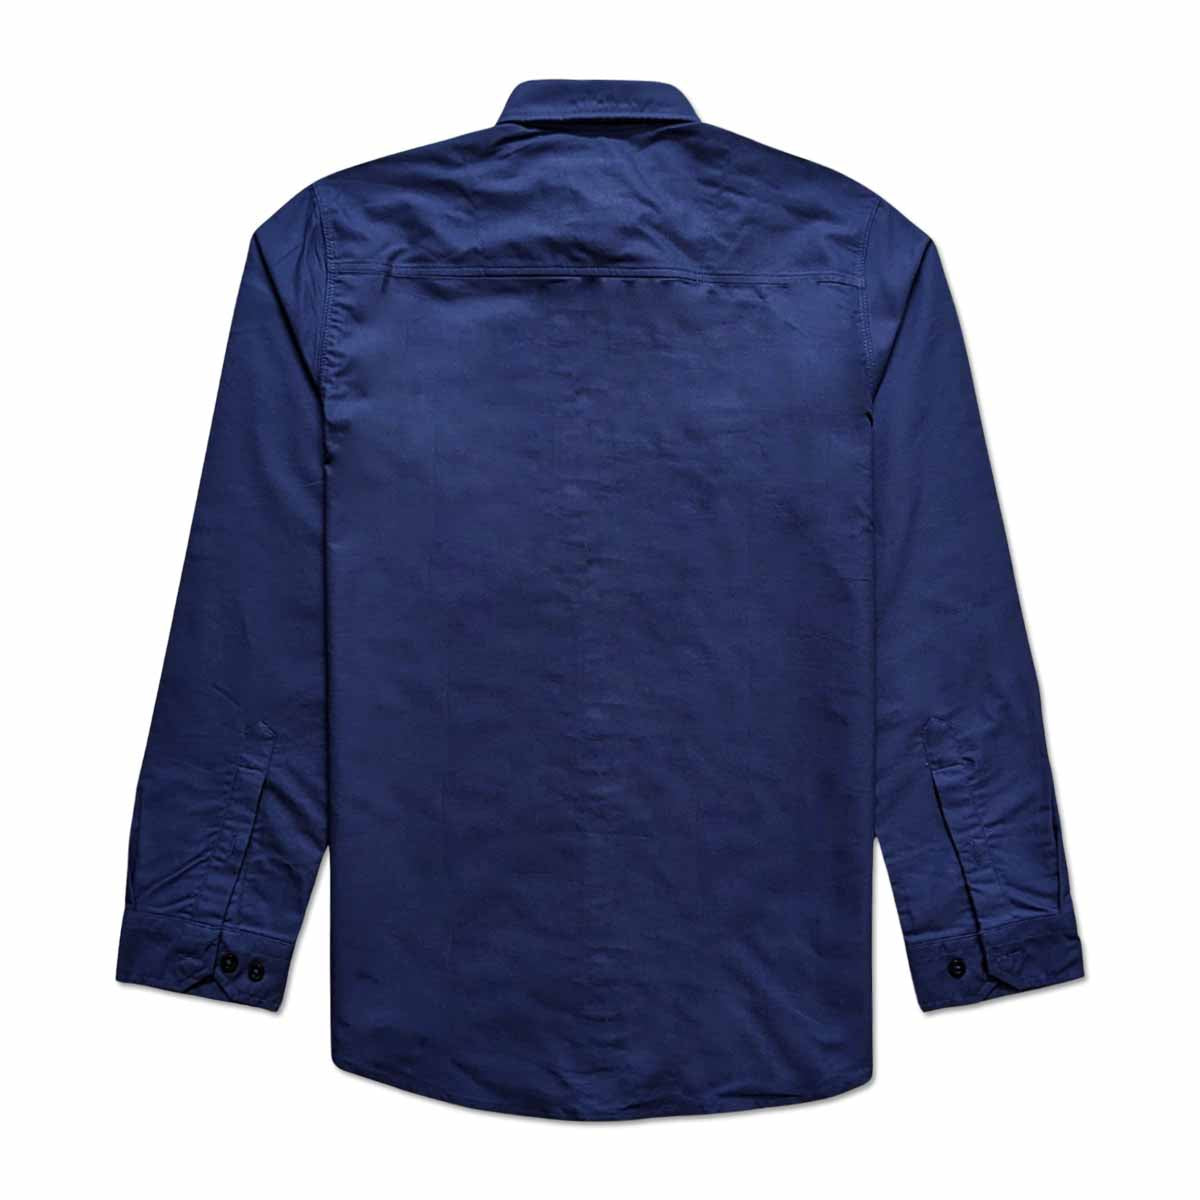 Brand Expo Premium Quality Branded Full Sleeves Shirt for Men's